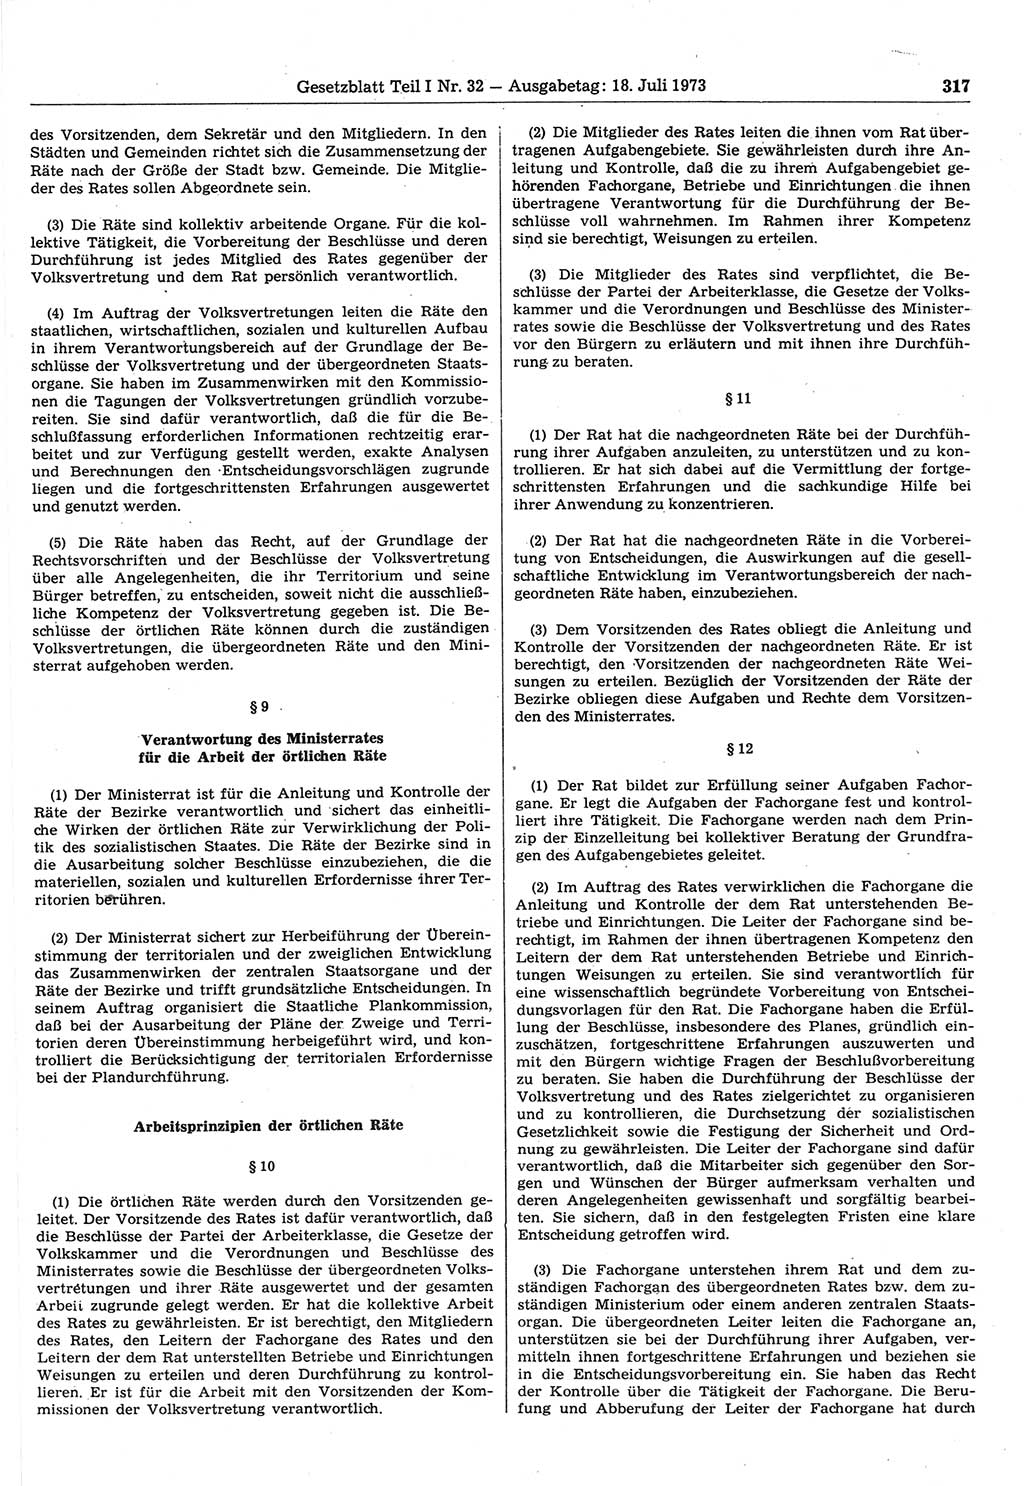 Gesetzblatt (GBl.) der Deutschen Demokratischen Republik (DDR) Teil Ⅰ 1973, Seite 317 (GBl. DDR Ⅰ 1973, S. 317)